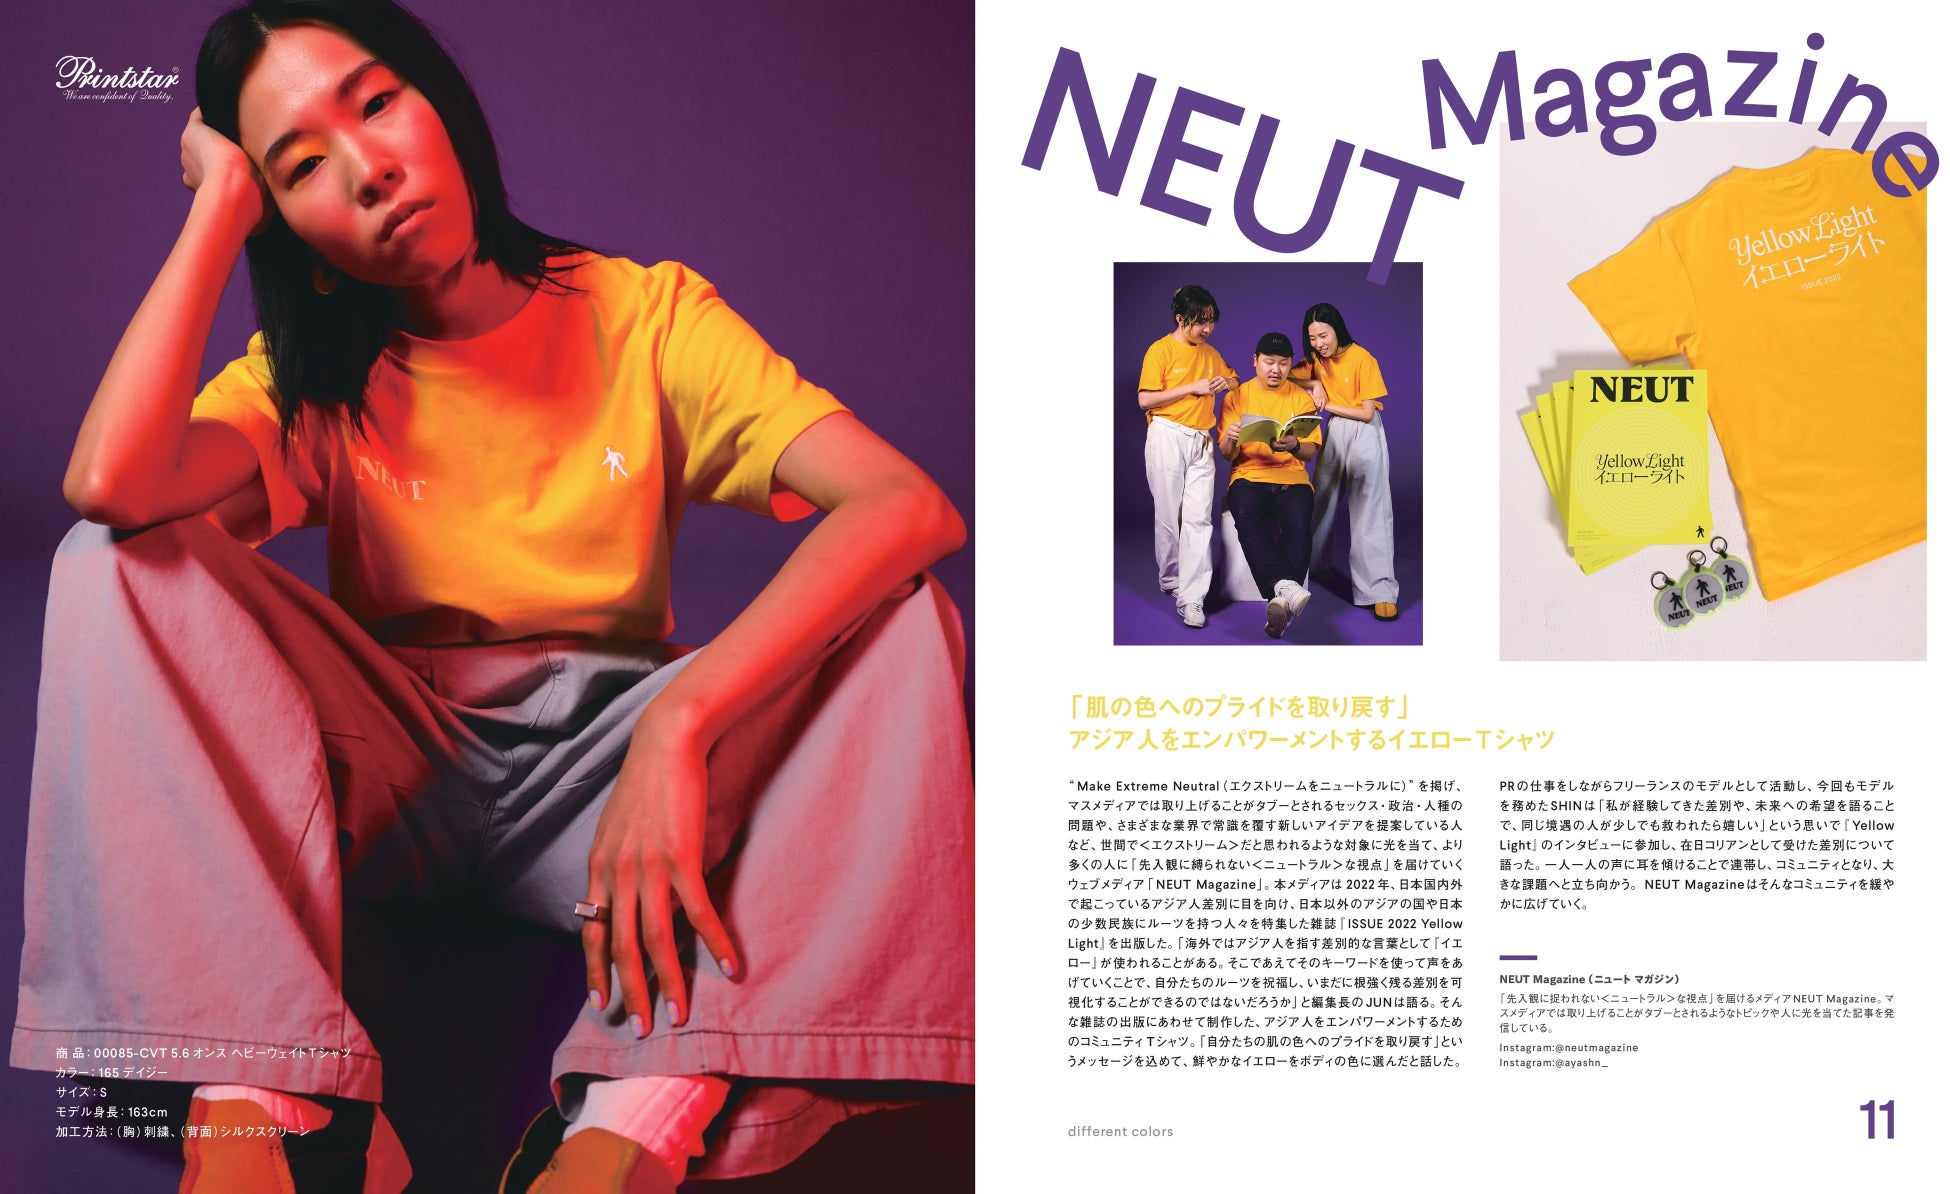 プリンタブルウェア「Printstar」「glimmer」と人気メディア『NEUT Magazine』がコラボで最新カタログを発刊。俳優松㟢翔平ら7組が自作Tシャツを披露。プレゼントキャンペーンも実施のサブ画像5